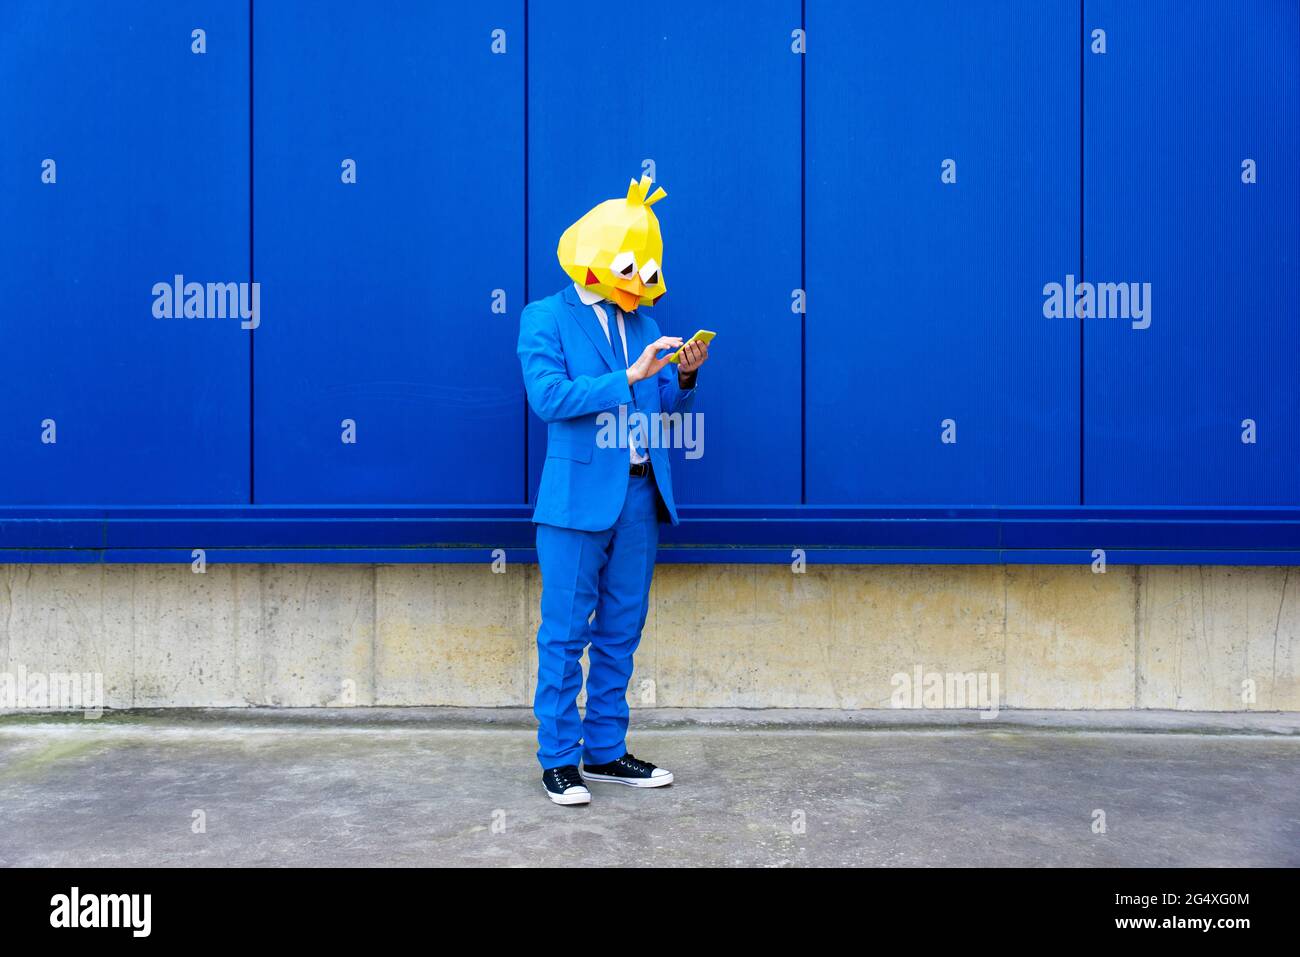 Uomo che indossa una vivace tuta blu e una maschera di protezione contro la parete blu con lo smartphone in mano Foto Stock